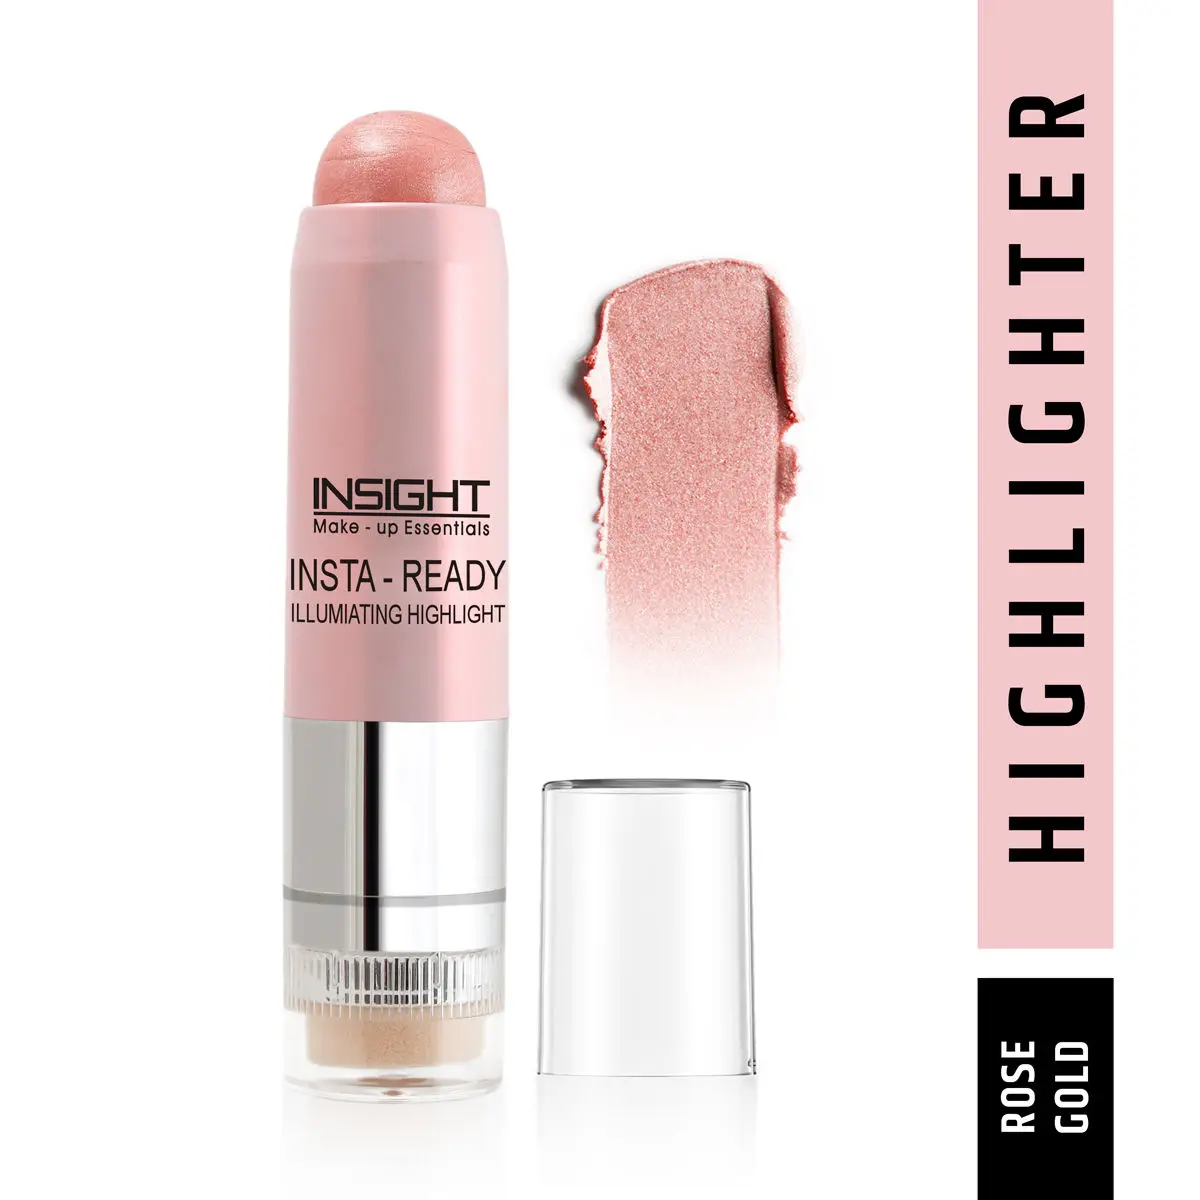 Insight Insta-Ready Illuminating Highlighter_Rose Gold